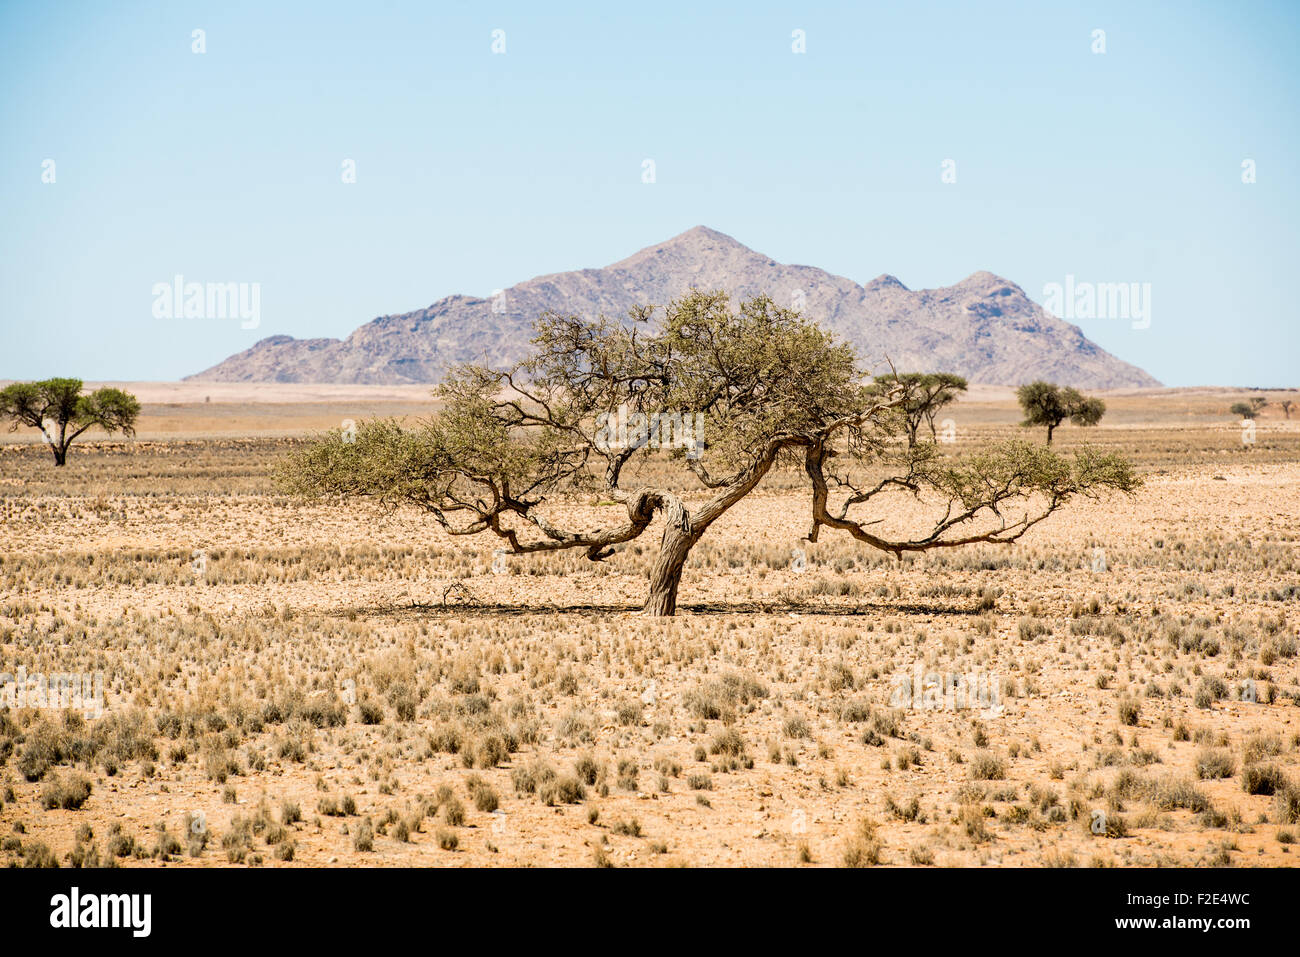 Baum wächst in der Wüste mit einem Berg direkt dahinter in Namibia, Afrika Stockfoto